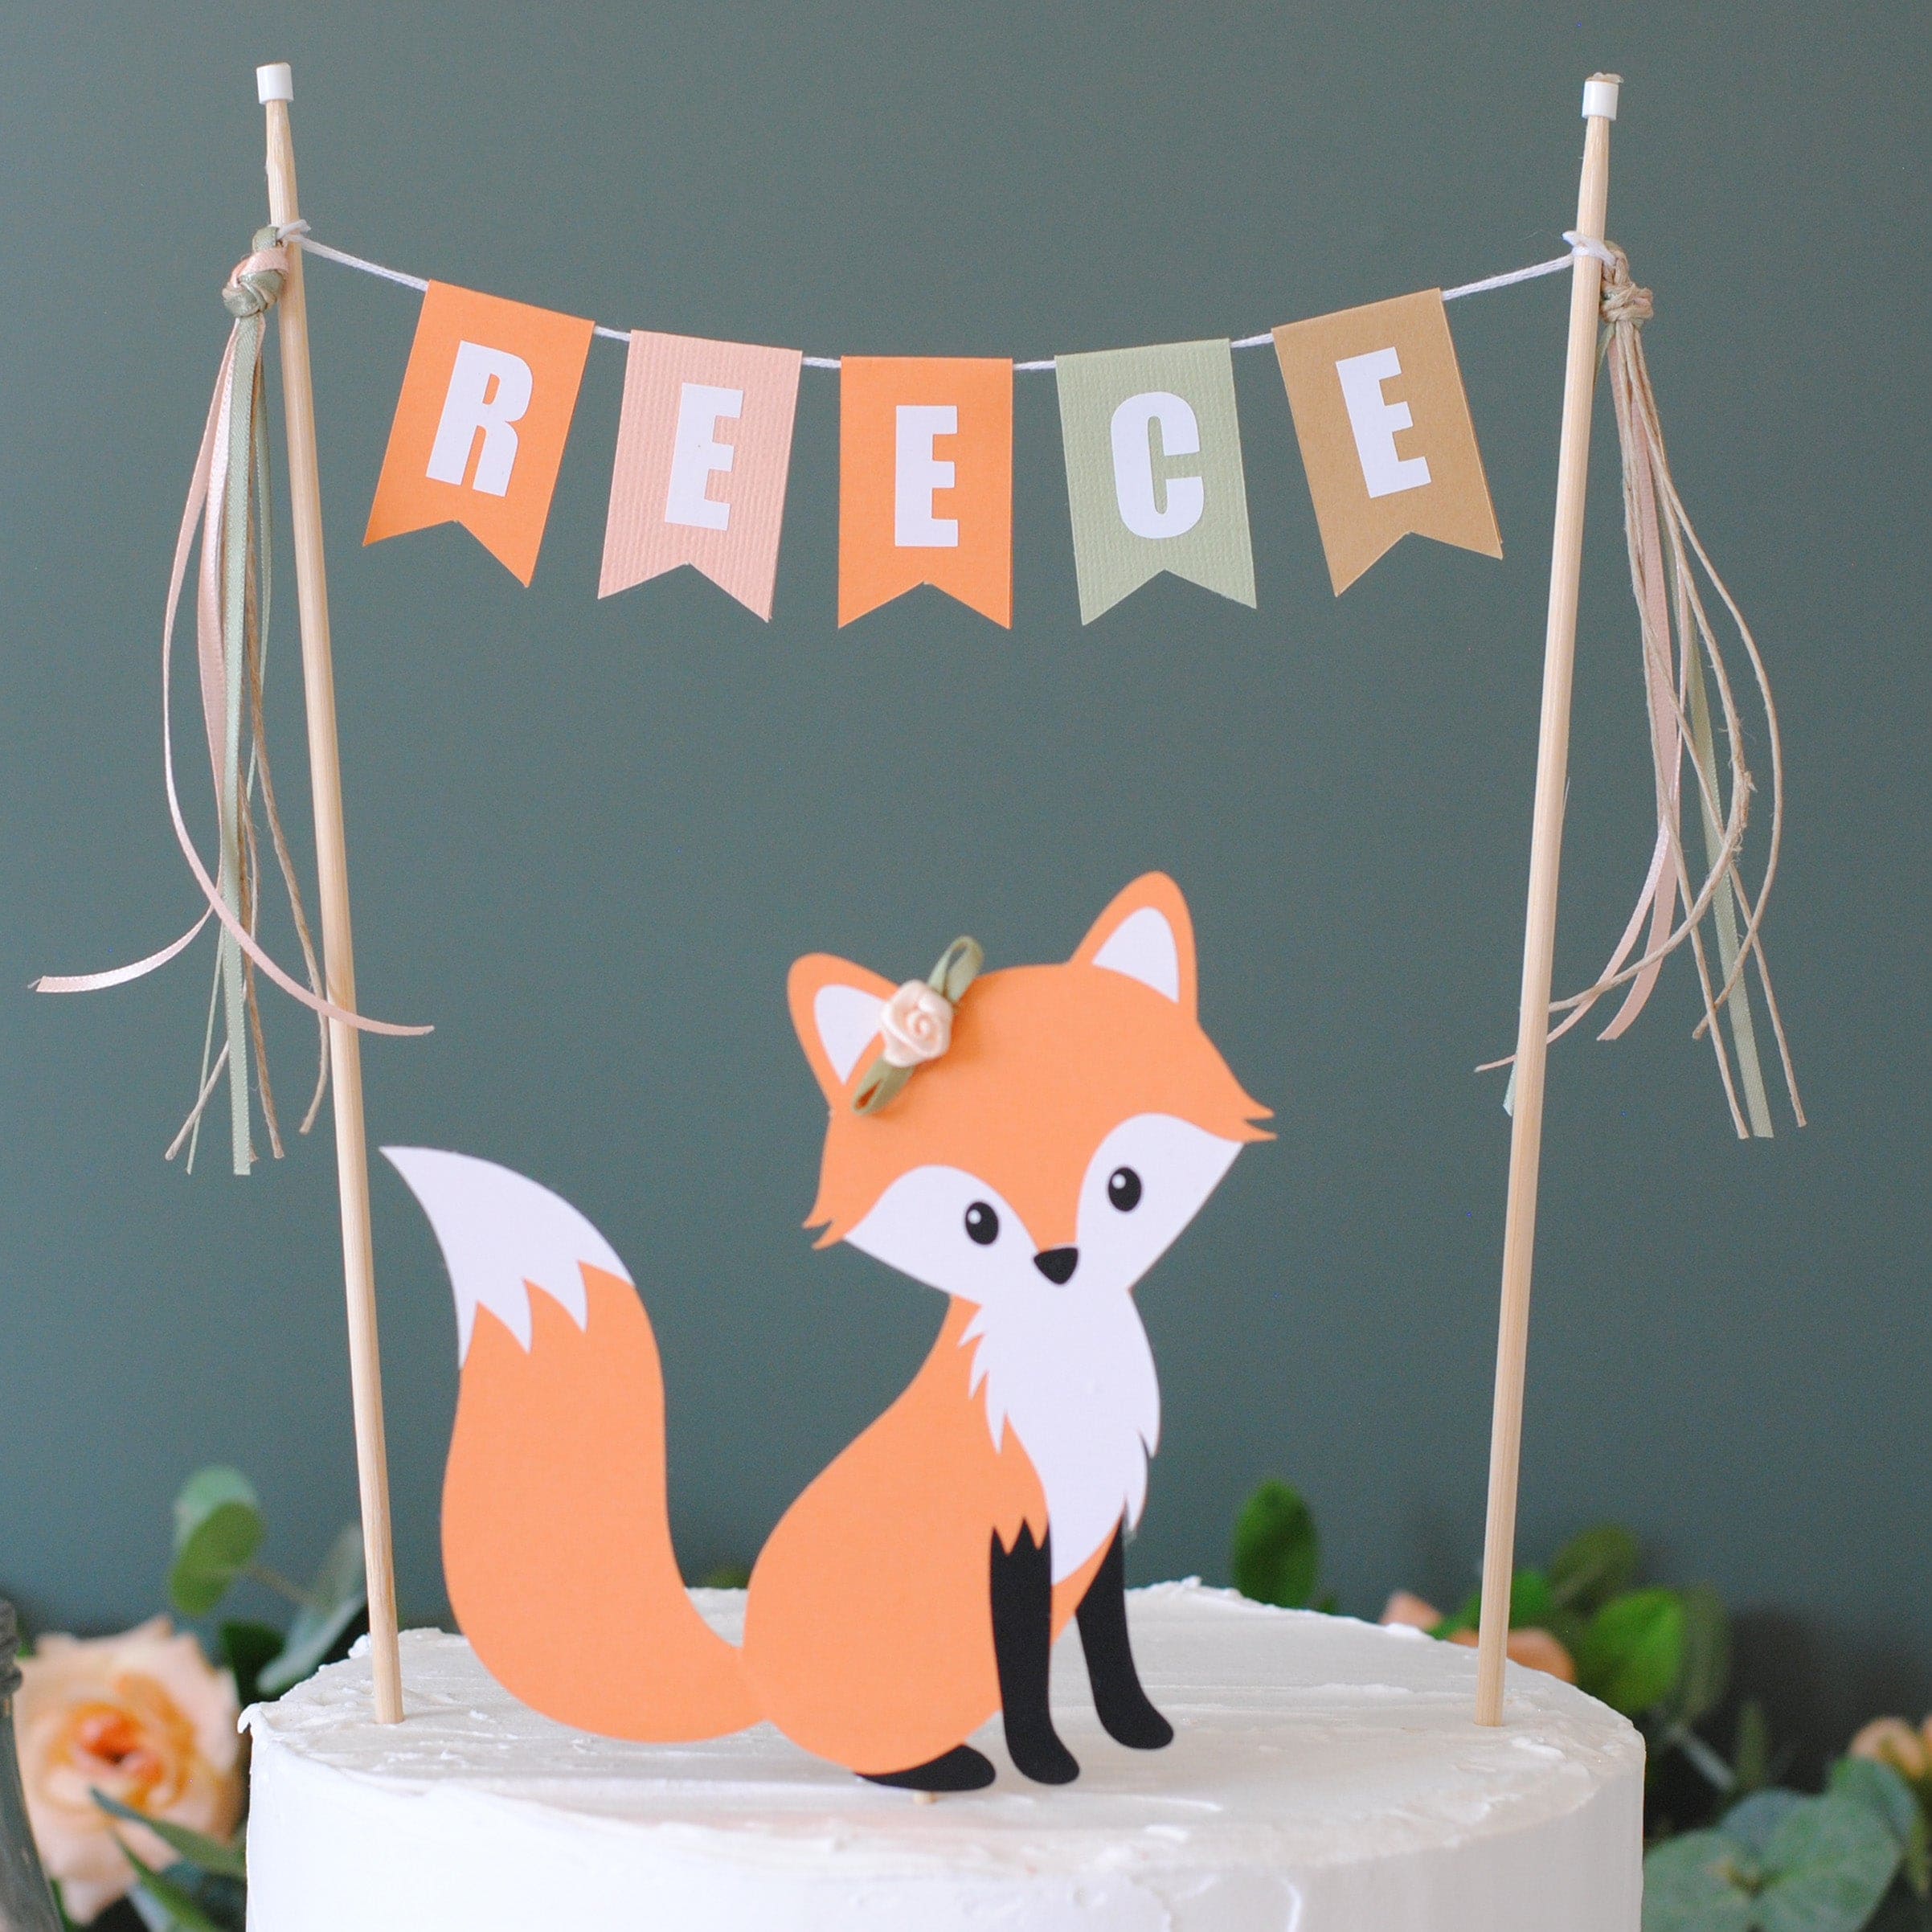 A fox cake I got to make for a baby shower! : r/Cakes